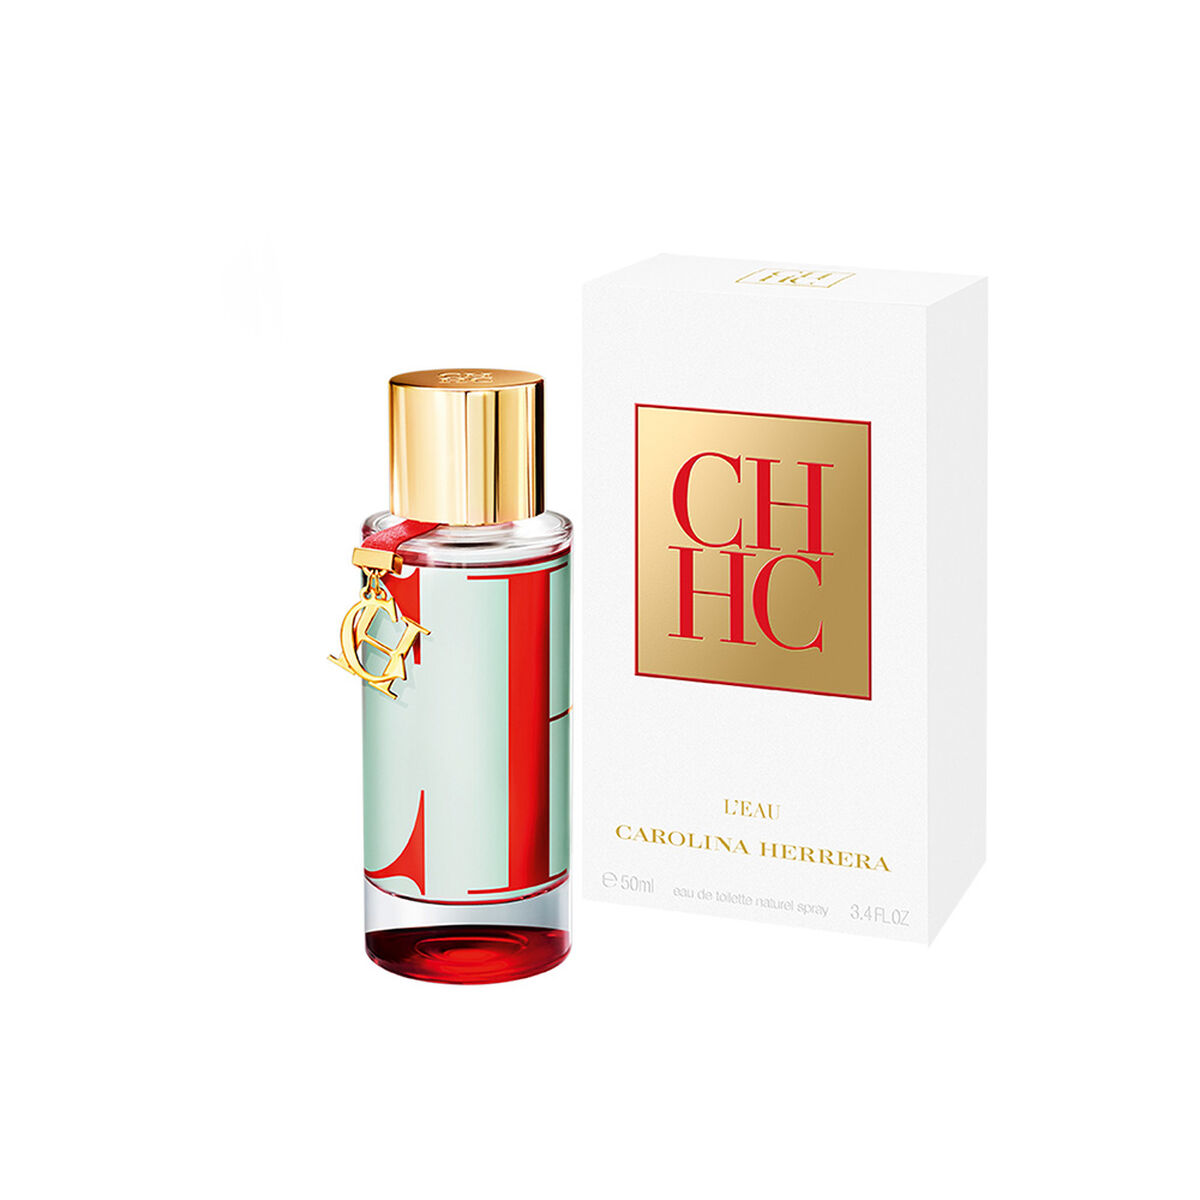 Perfume Carolina Herrera L'Eau EDT 50 ml